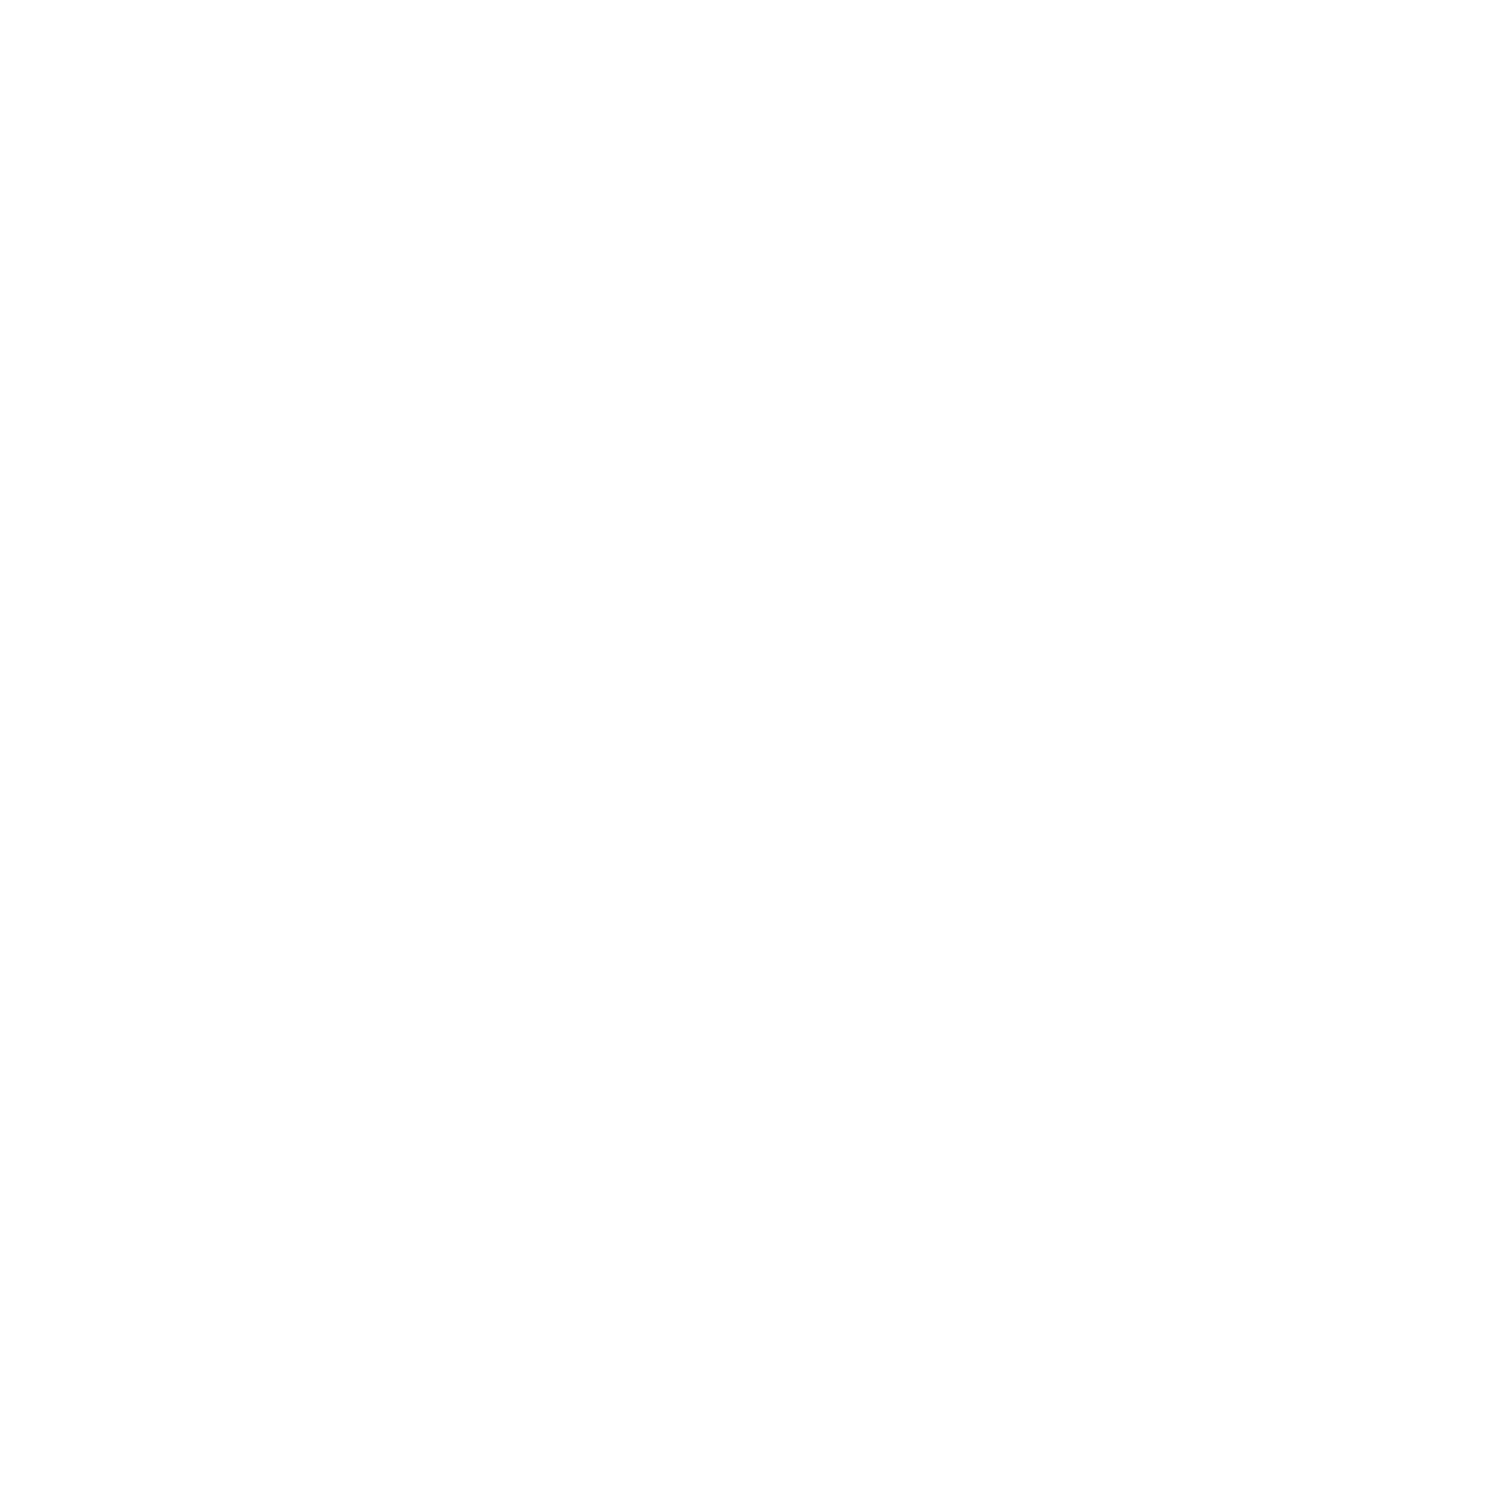 Buildrathletics logo transparent 5